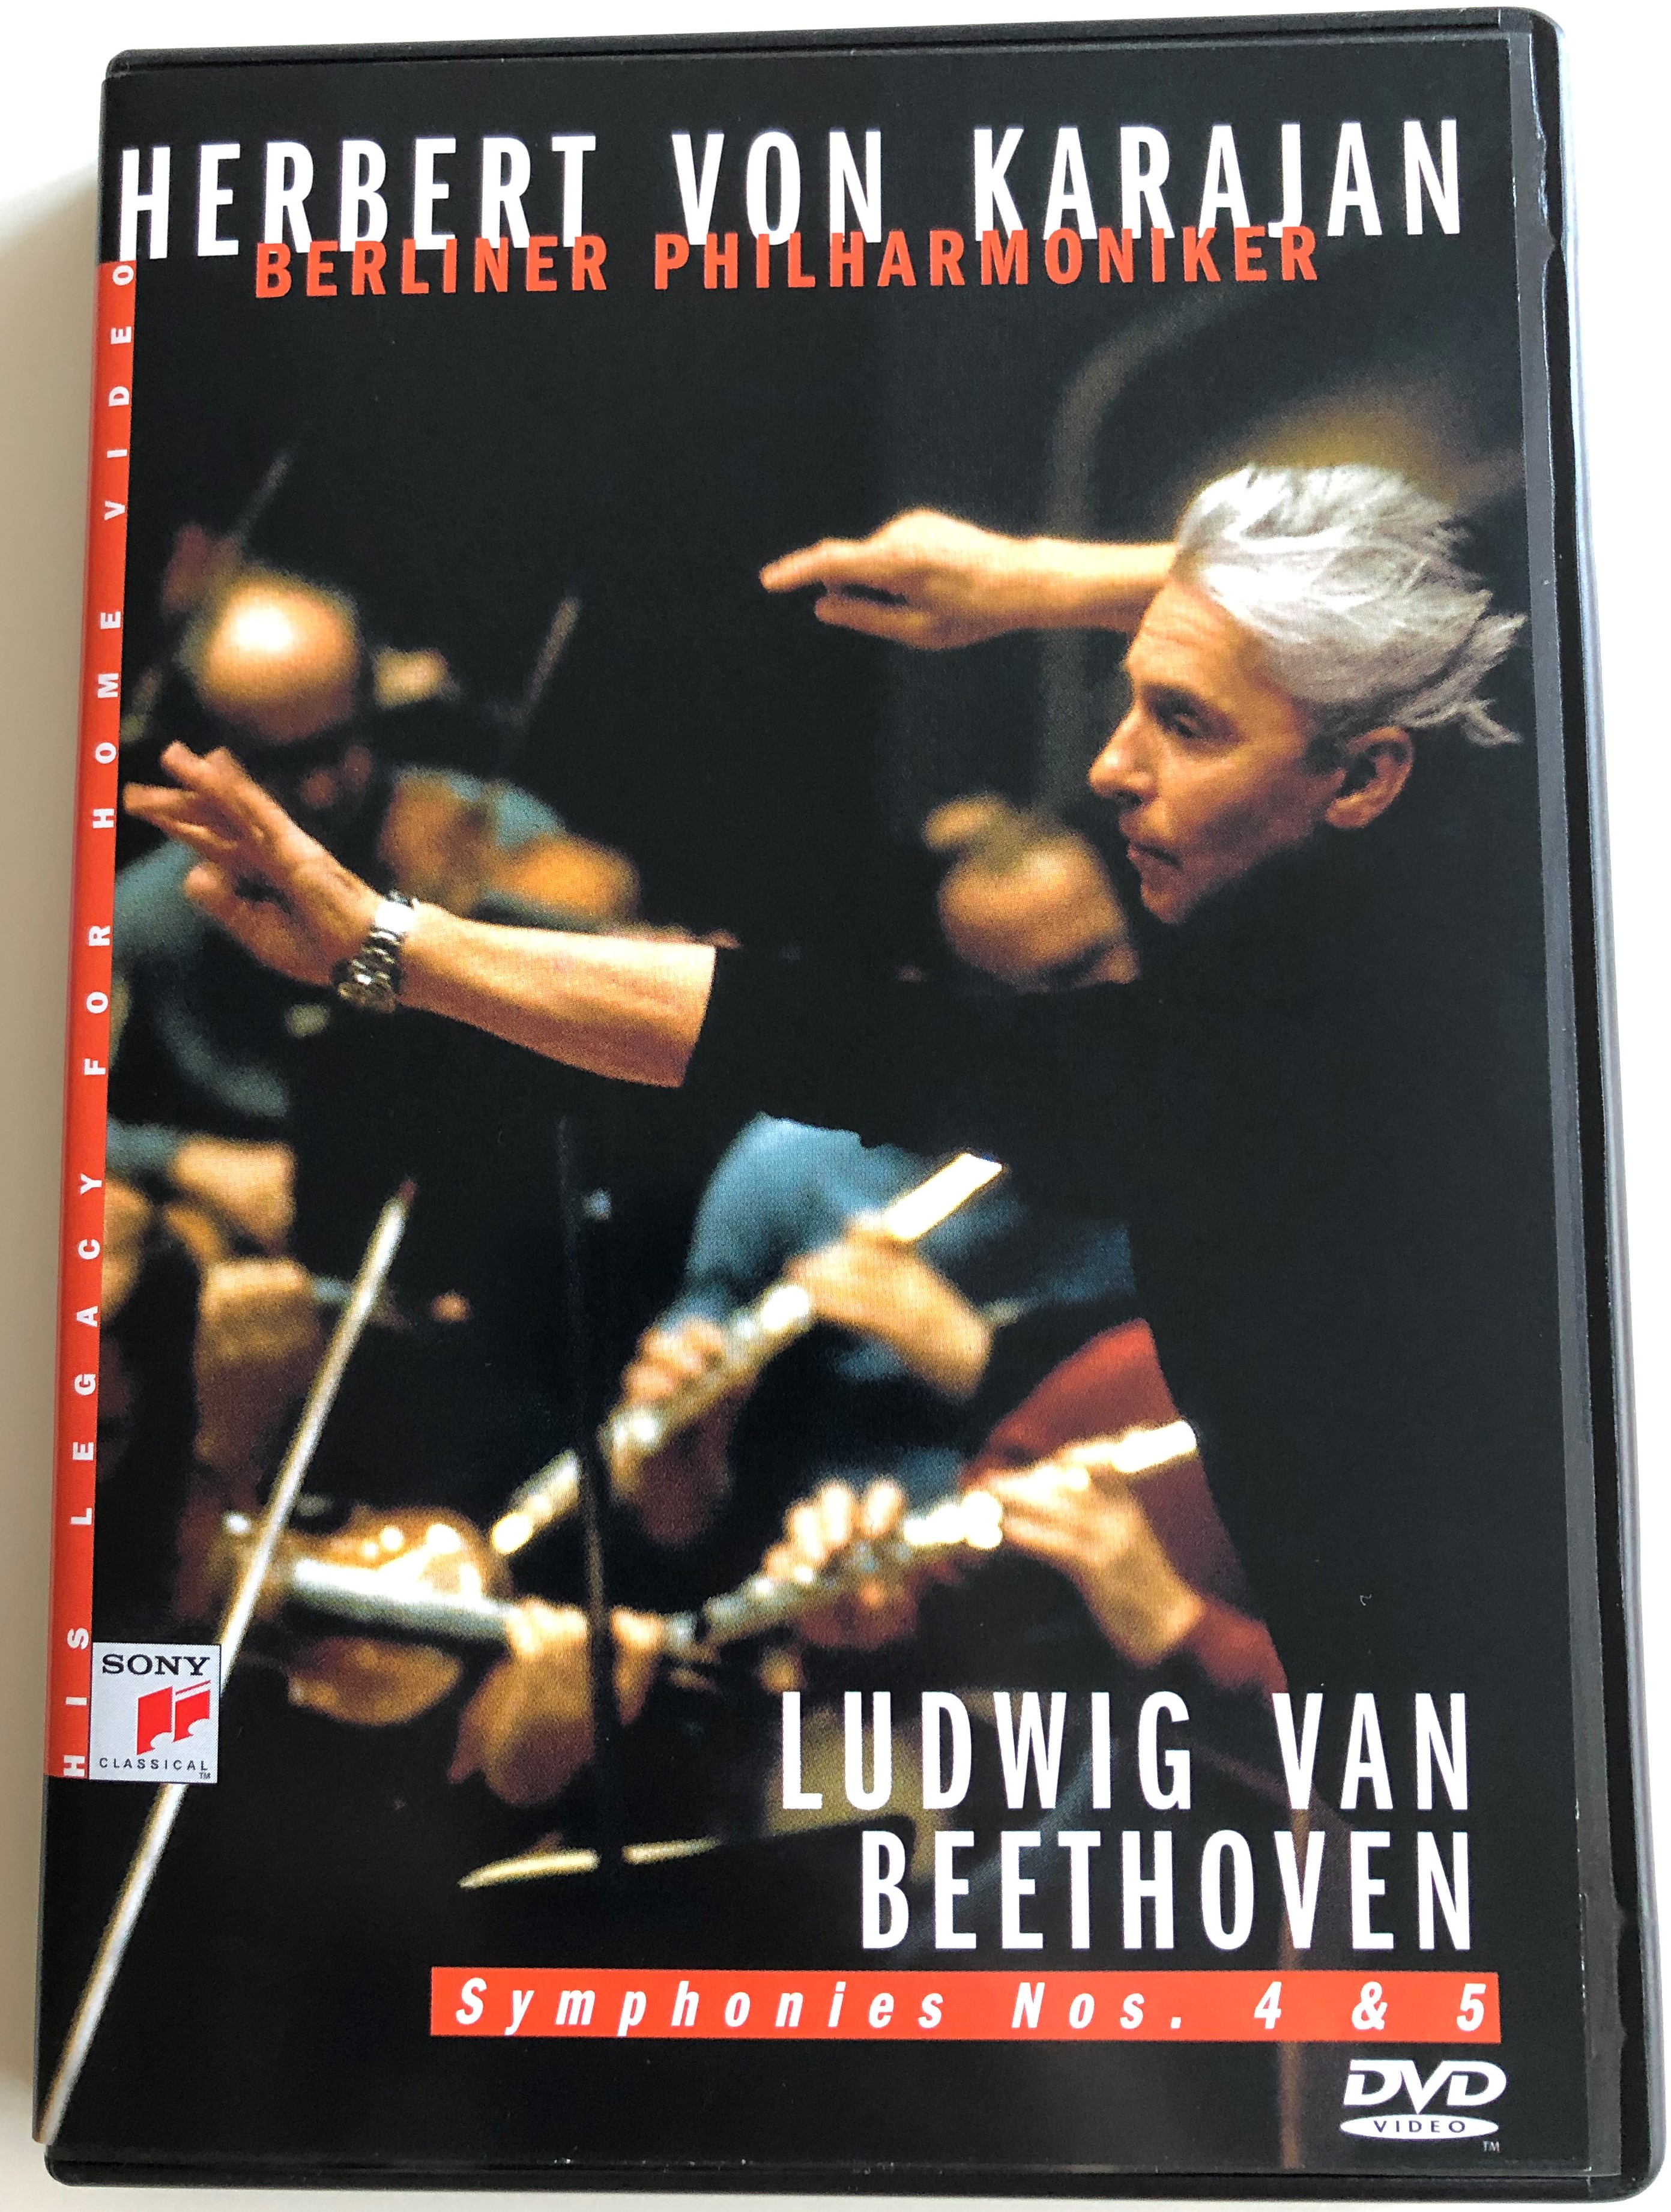 Herbert von Karajan DVD 1983 Ludwig van Beethoven - Symphonies Nos. 4 & 5 /  Berliner Philharmoniker / Recorded 1982-1983 in Berlin Philharmonic / Sony  Classical - bibleinmylanguage